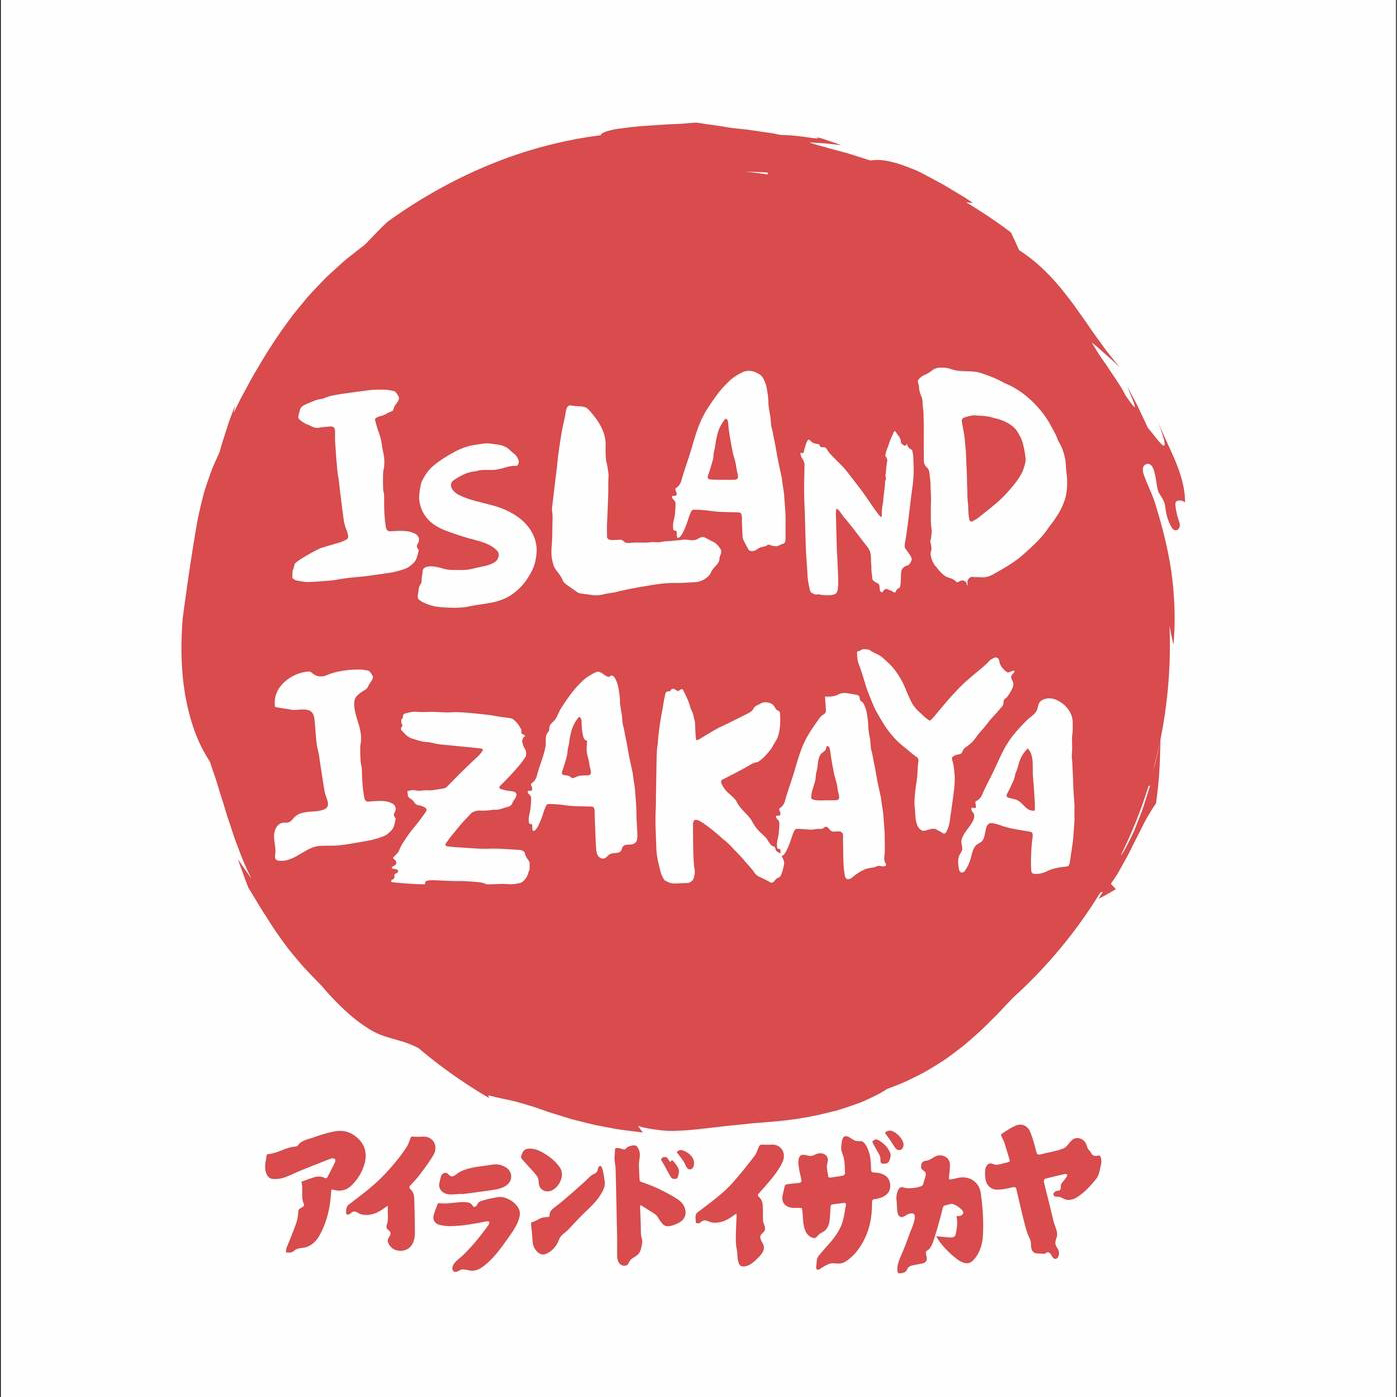 island izakaya